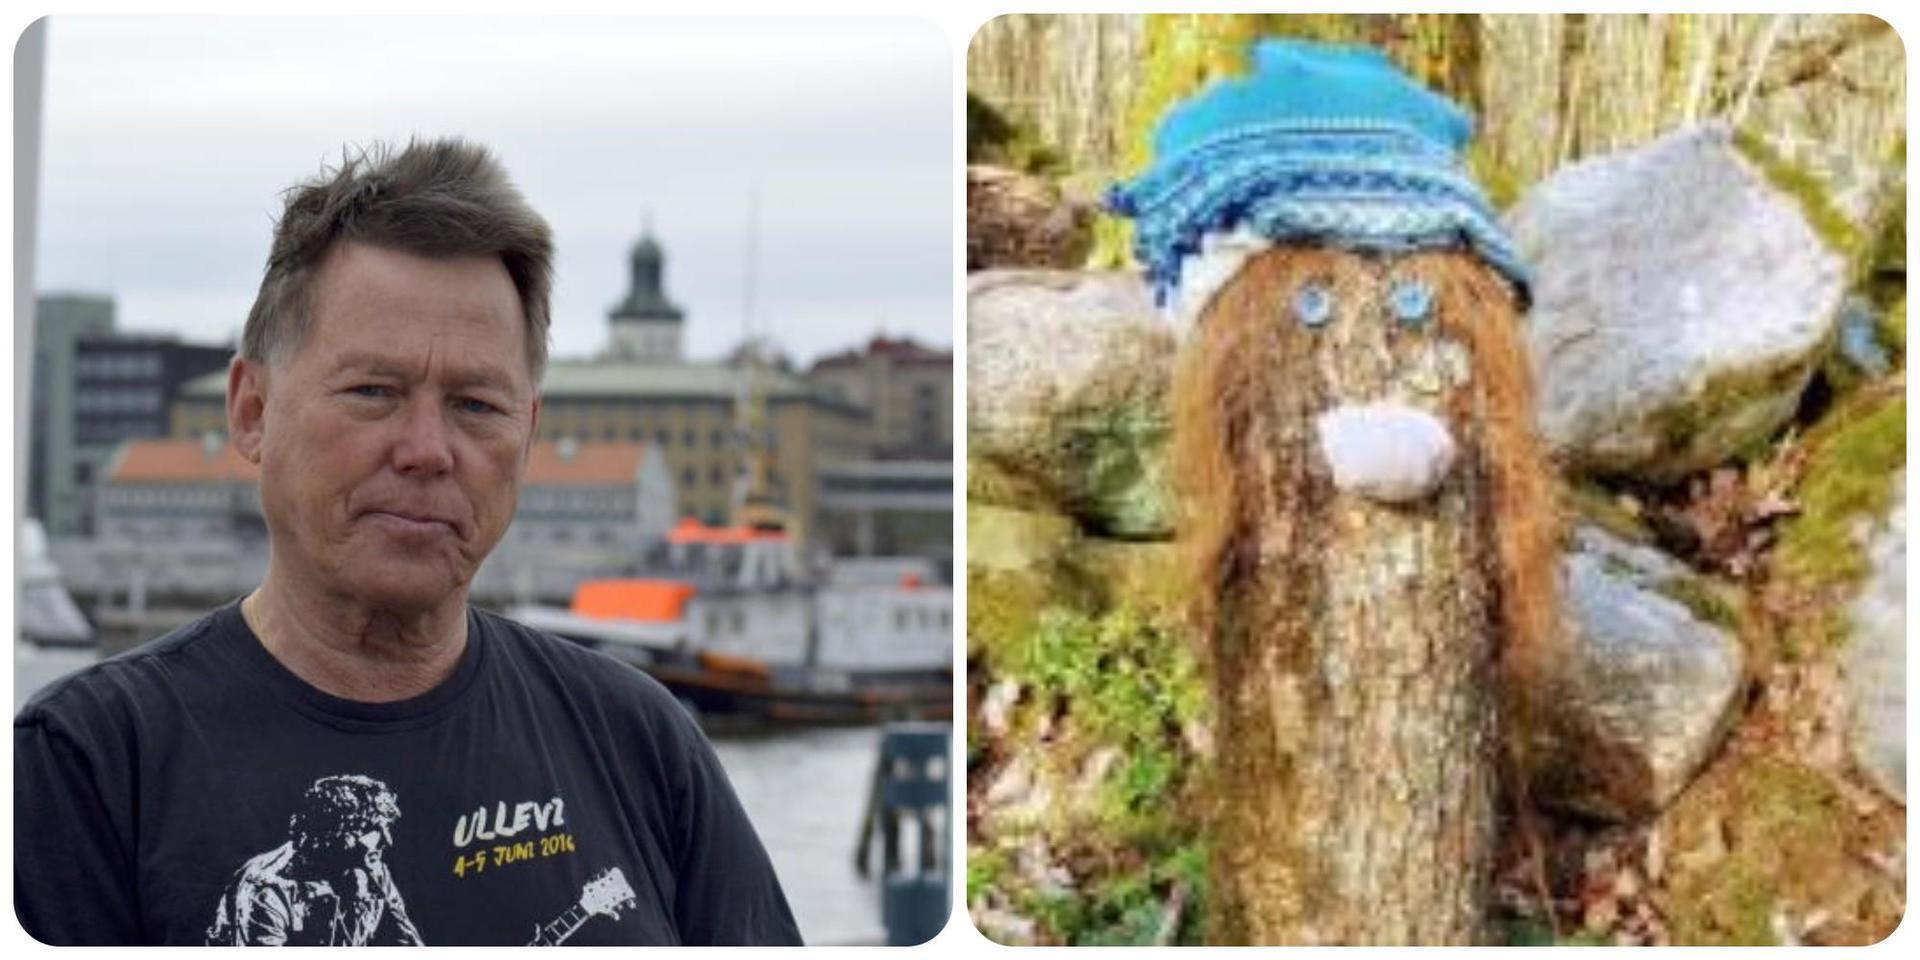 Kommunen har fattat sitt beslut: Lars Brandins Troll- och tomteskog ska rivas.